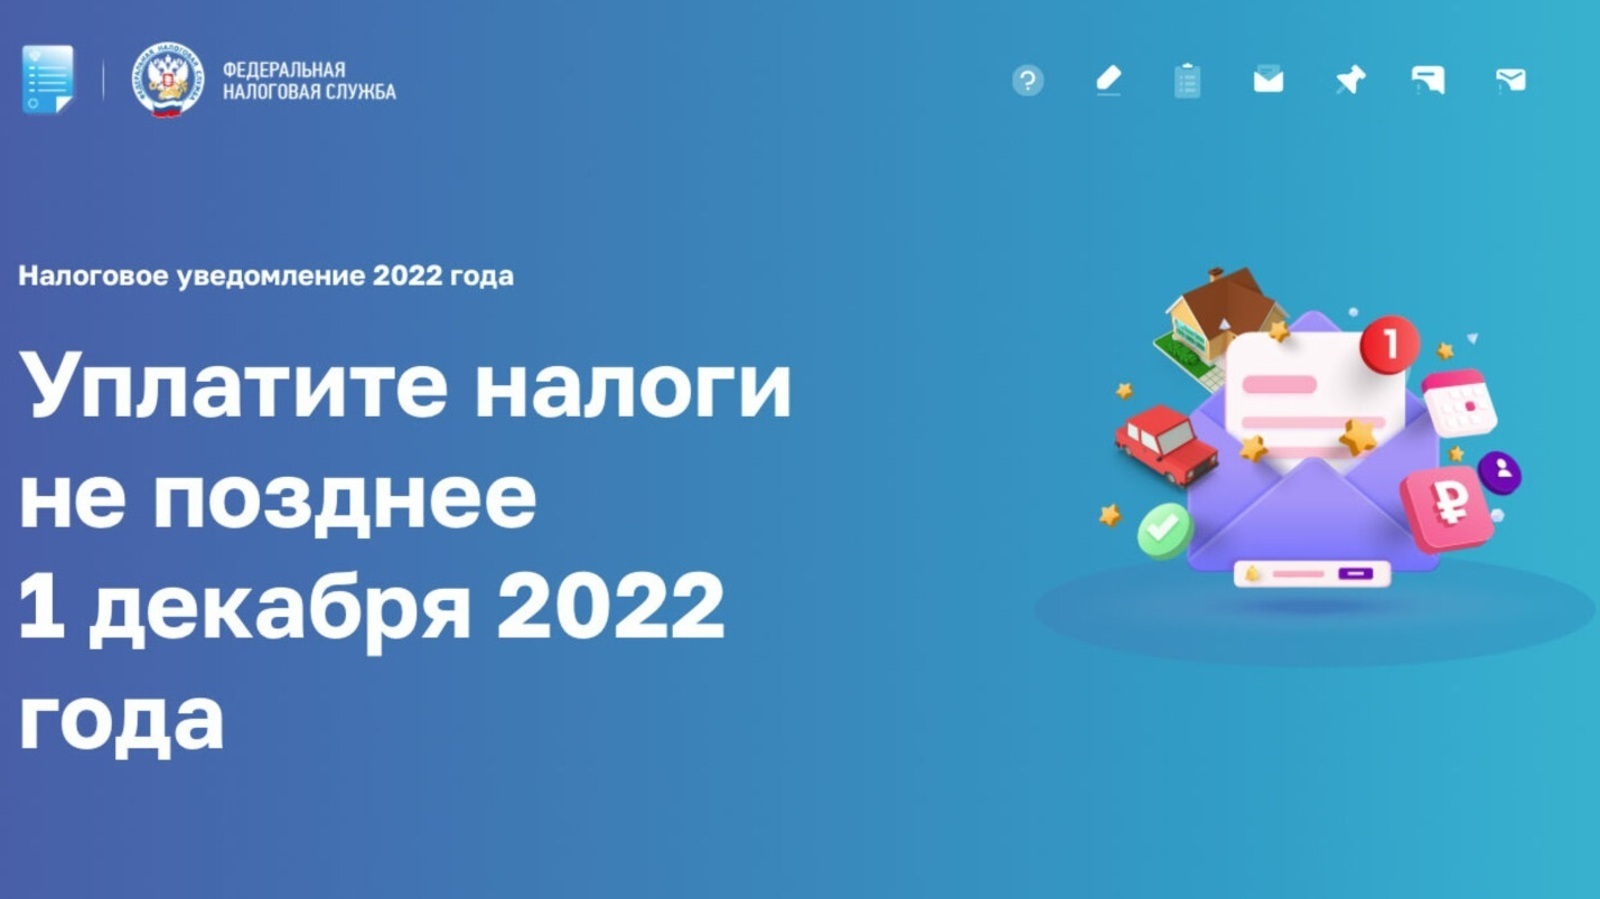 В помощь гражданам разработана новая промостраница «Налоговое уведомление 2022 года»